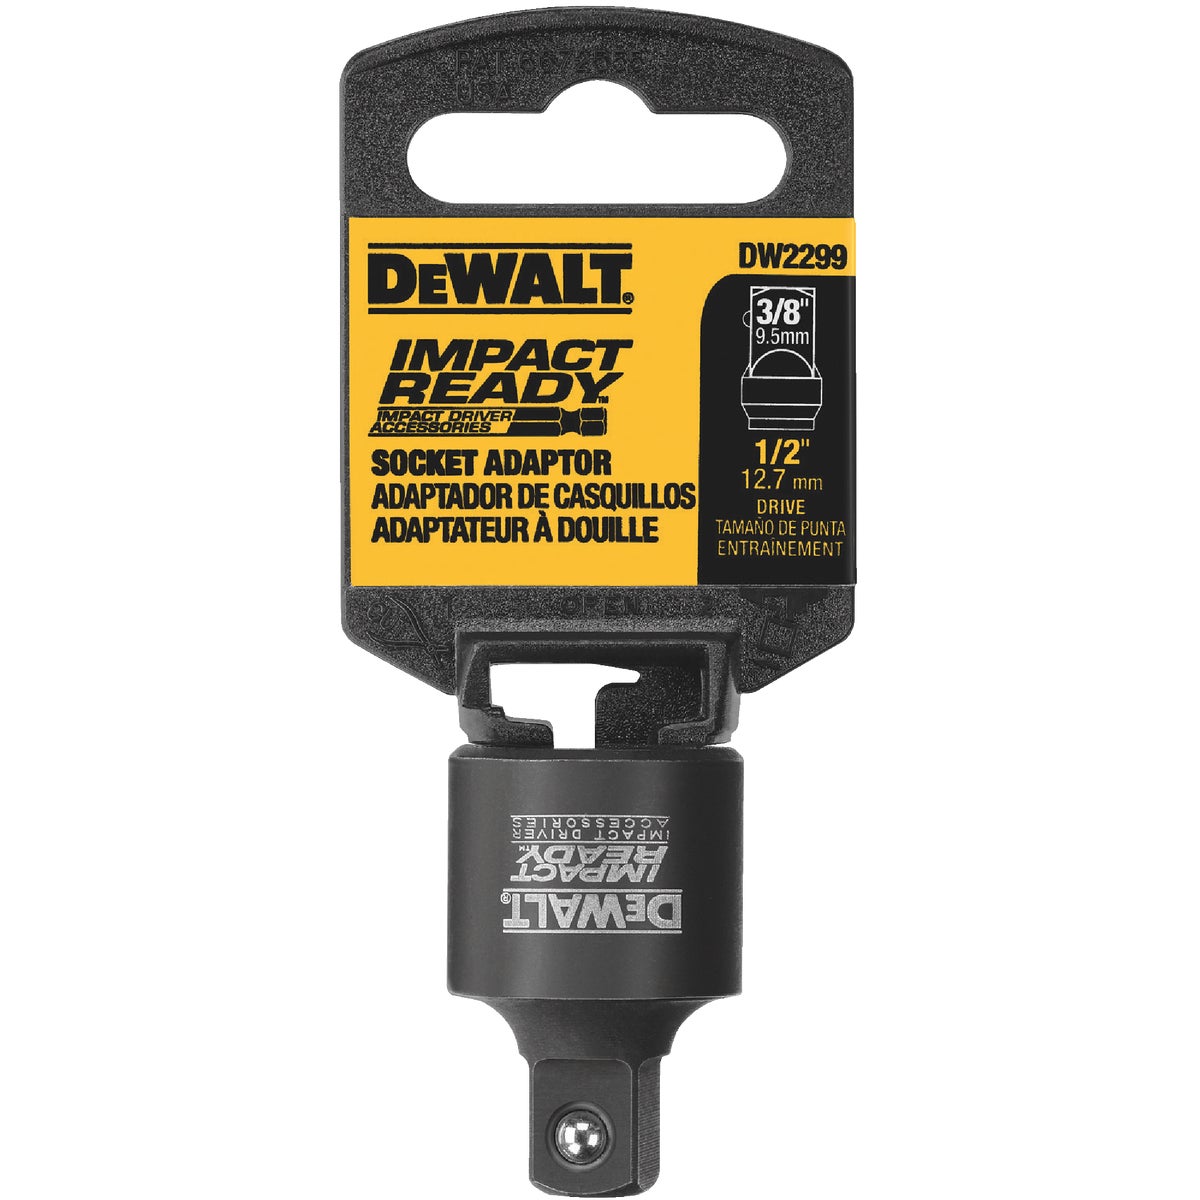 DEWALT Impact Ready 1/2 In. F x 3/8 In. M Socket Adapter